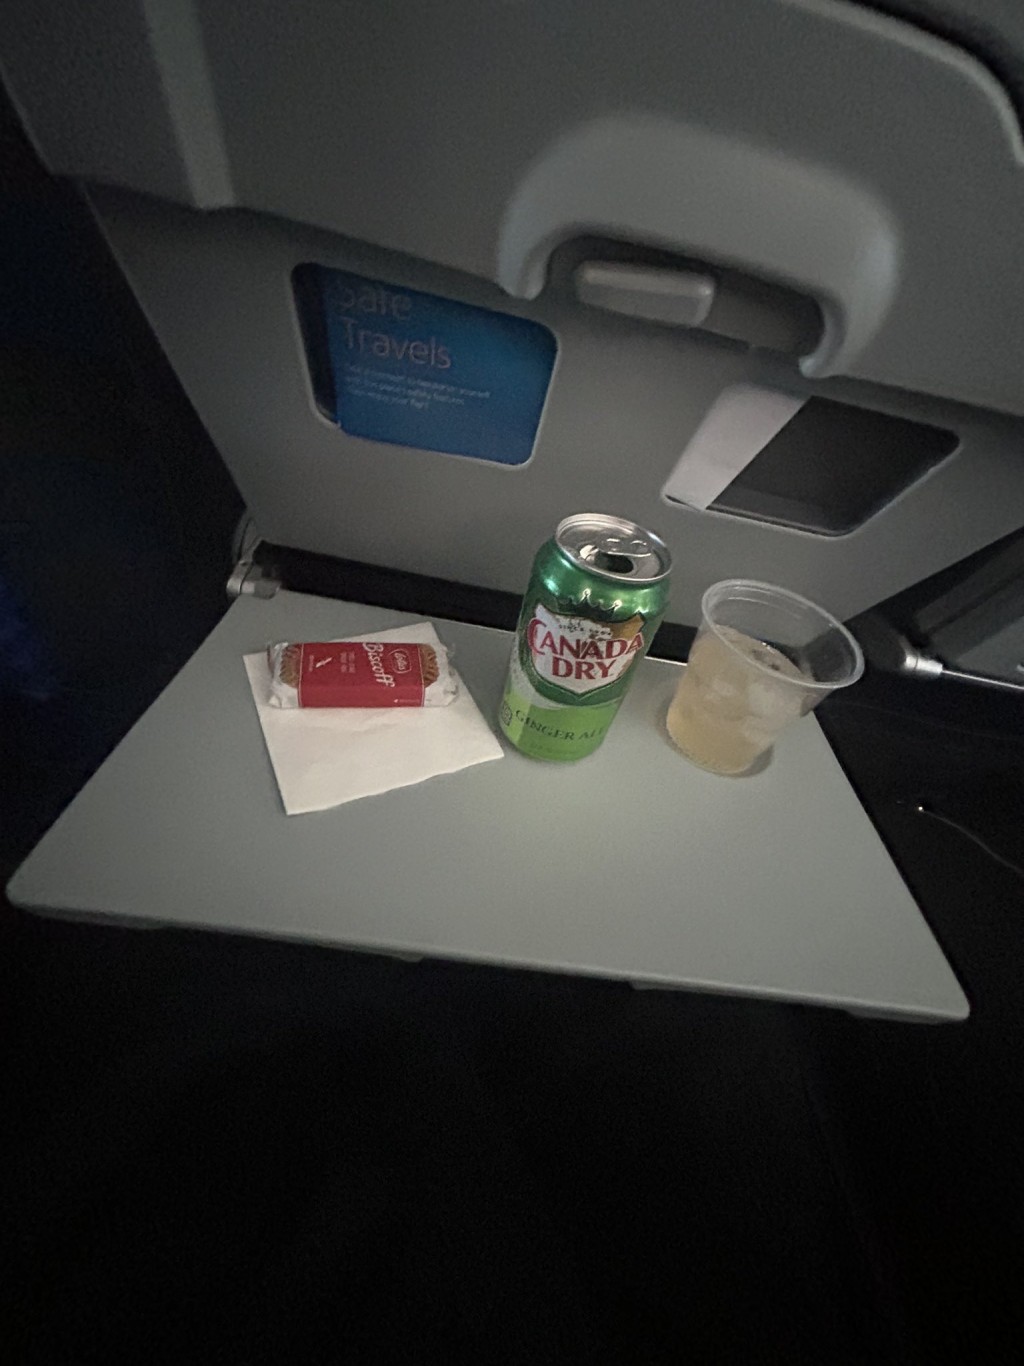 许多网民也表示在航机上饮姜汁汽水风味更佳。